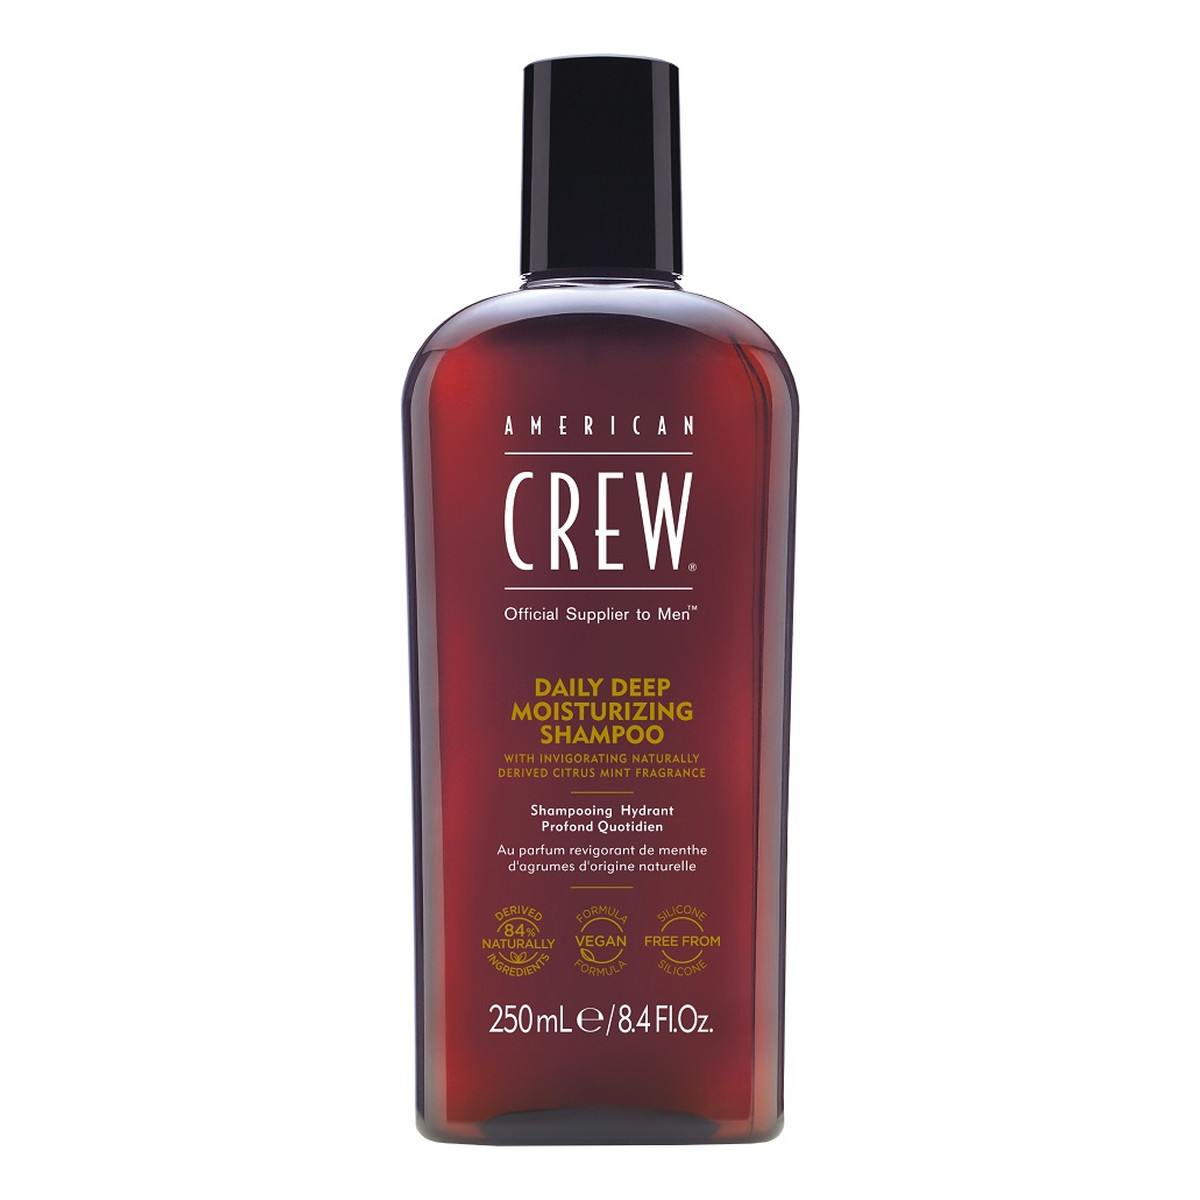 American Crew Daily deep moisturizing shampoo szampon głęboko nawilżający do włosów 250ml